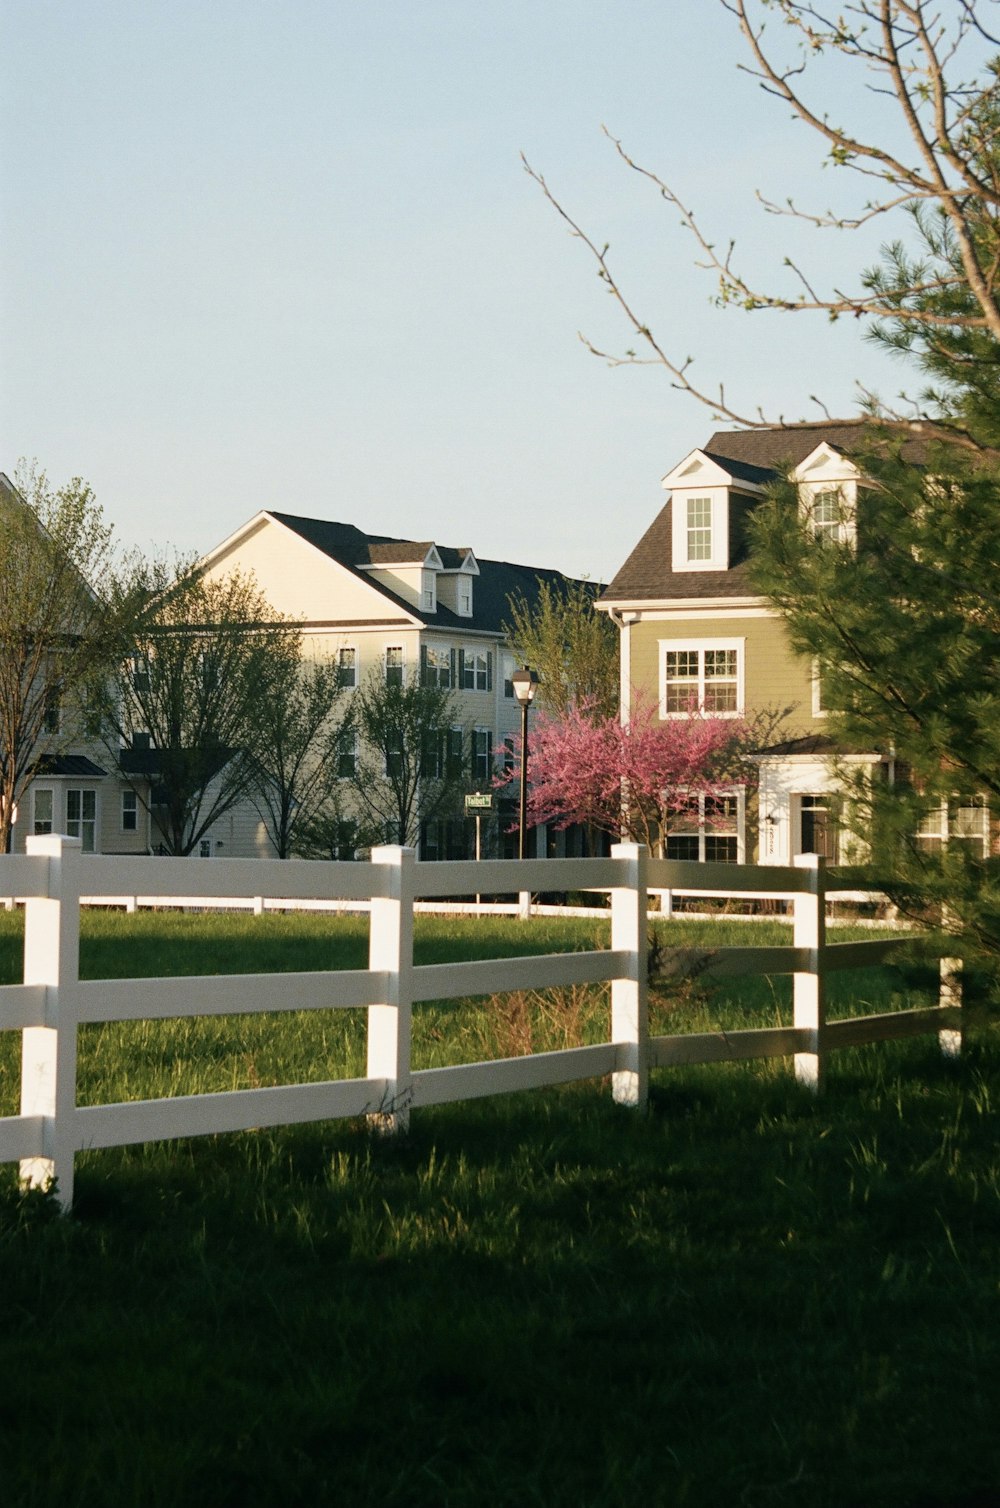 Casa de concreto marrom e branca perto do campo de grama verde durante o dia